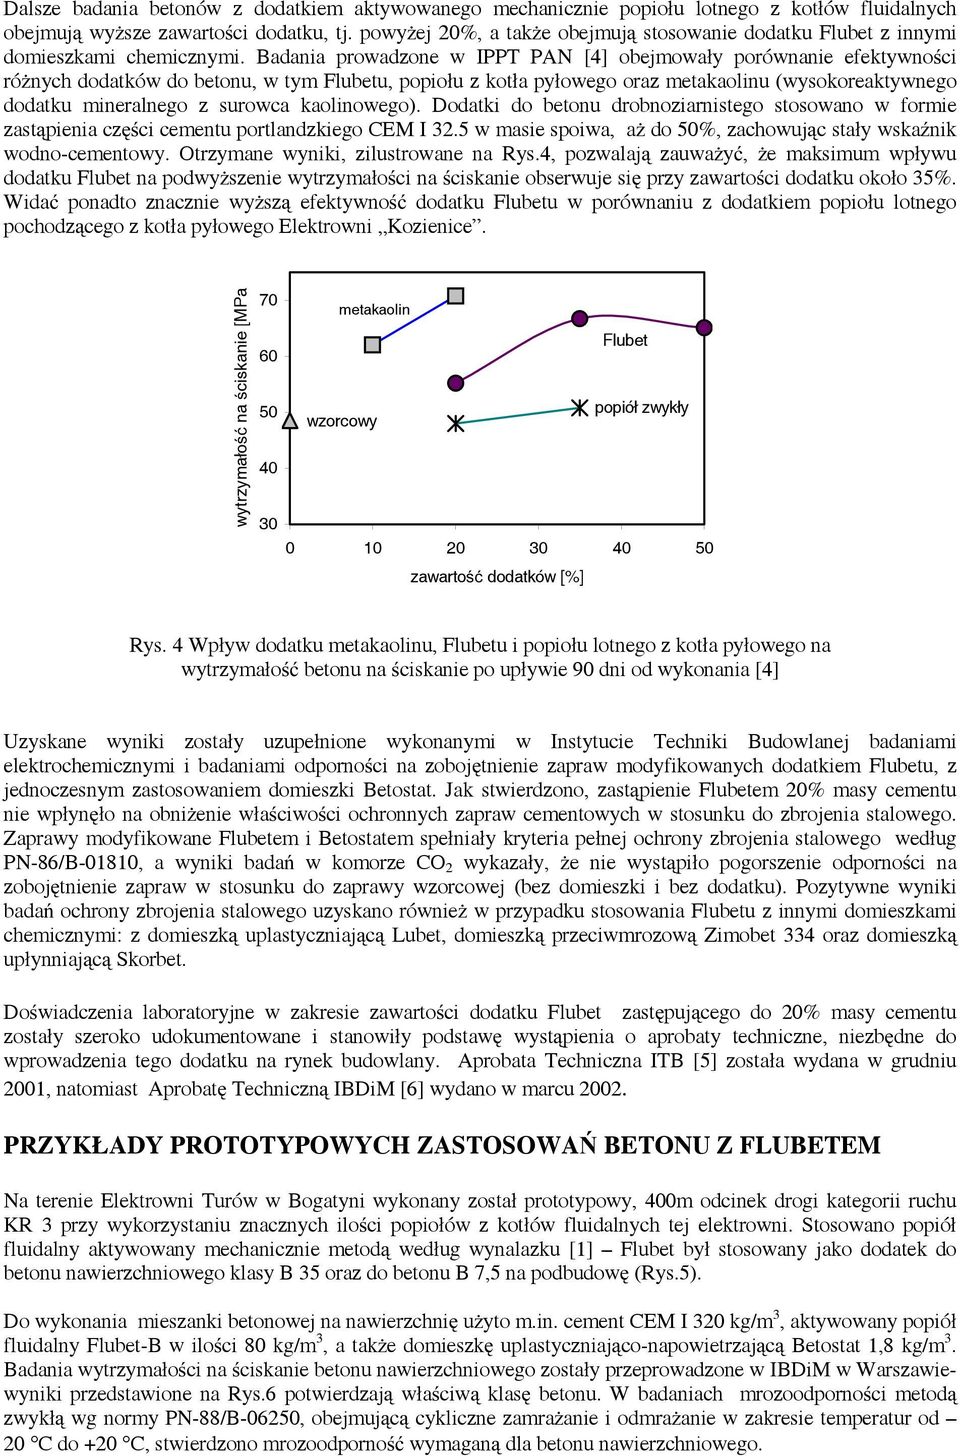 Badania prowadzone w IPPT PAN [4] obejmowały porównanie efektywności różnych dodatków do betonu, w tym Flubetu, popiołu z kotła pyłowego oraz metakaolinu (wysokoreaktywnego dodatku mineralnego z